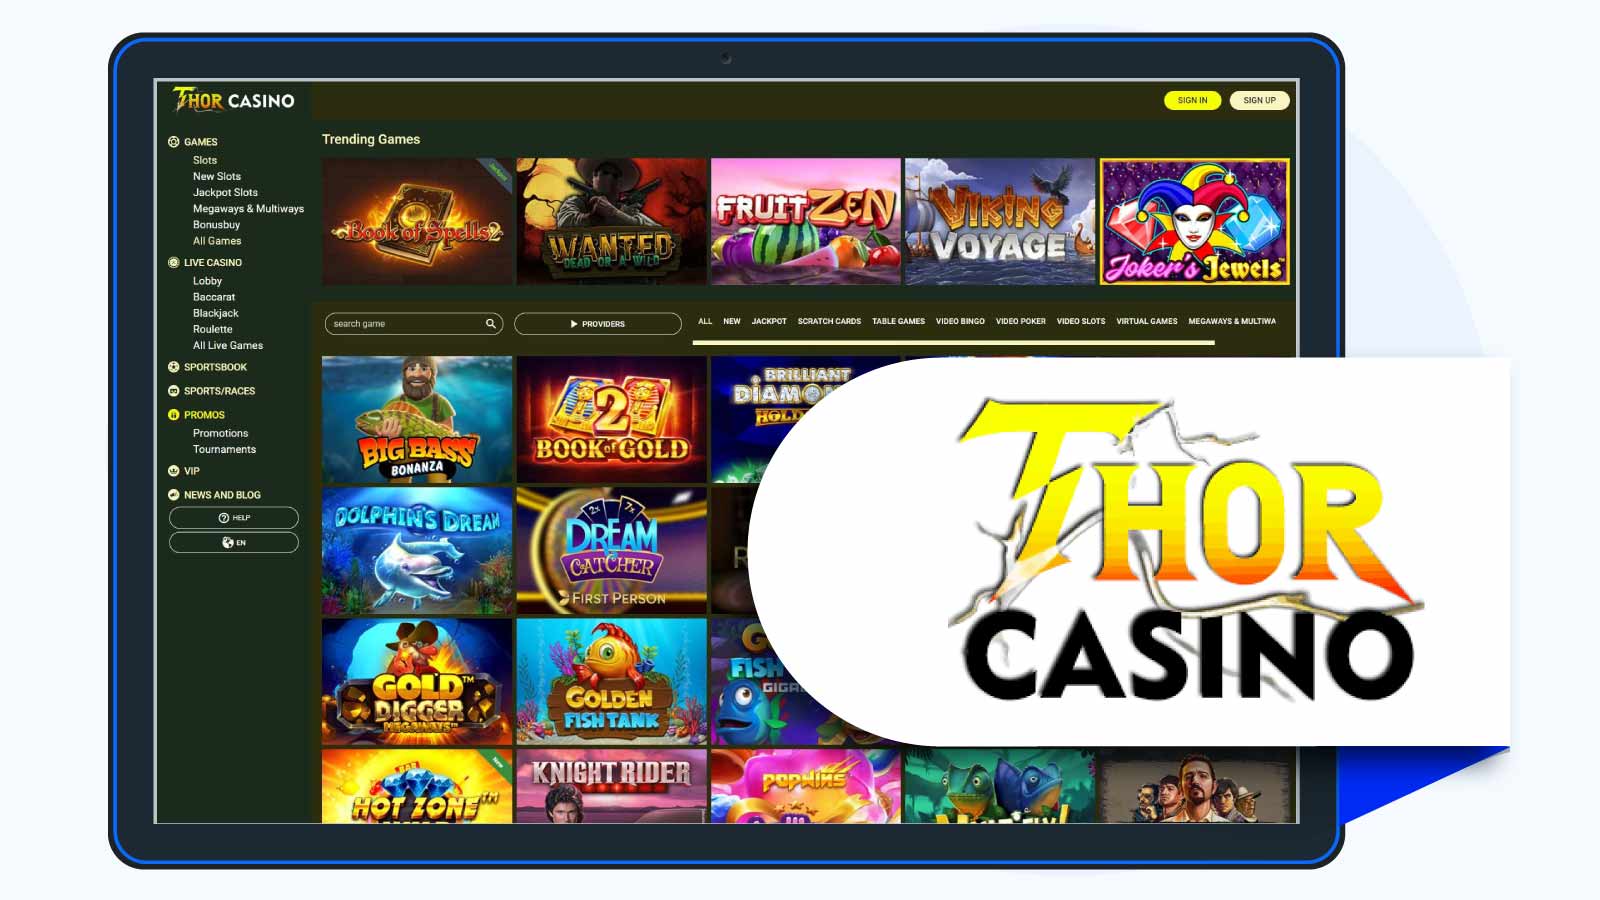 Thor Casino — Best for deposit bonuses